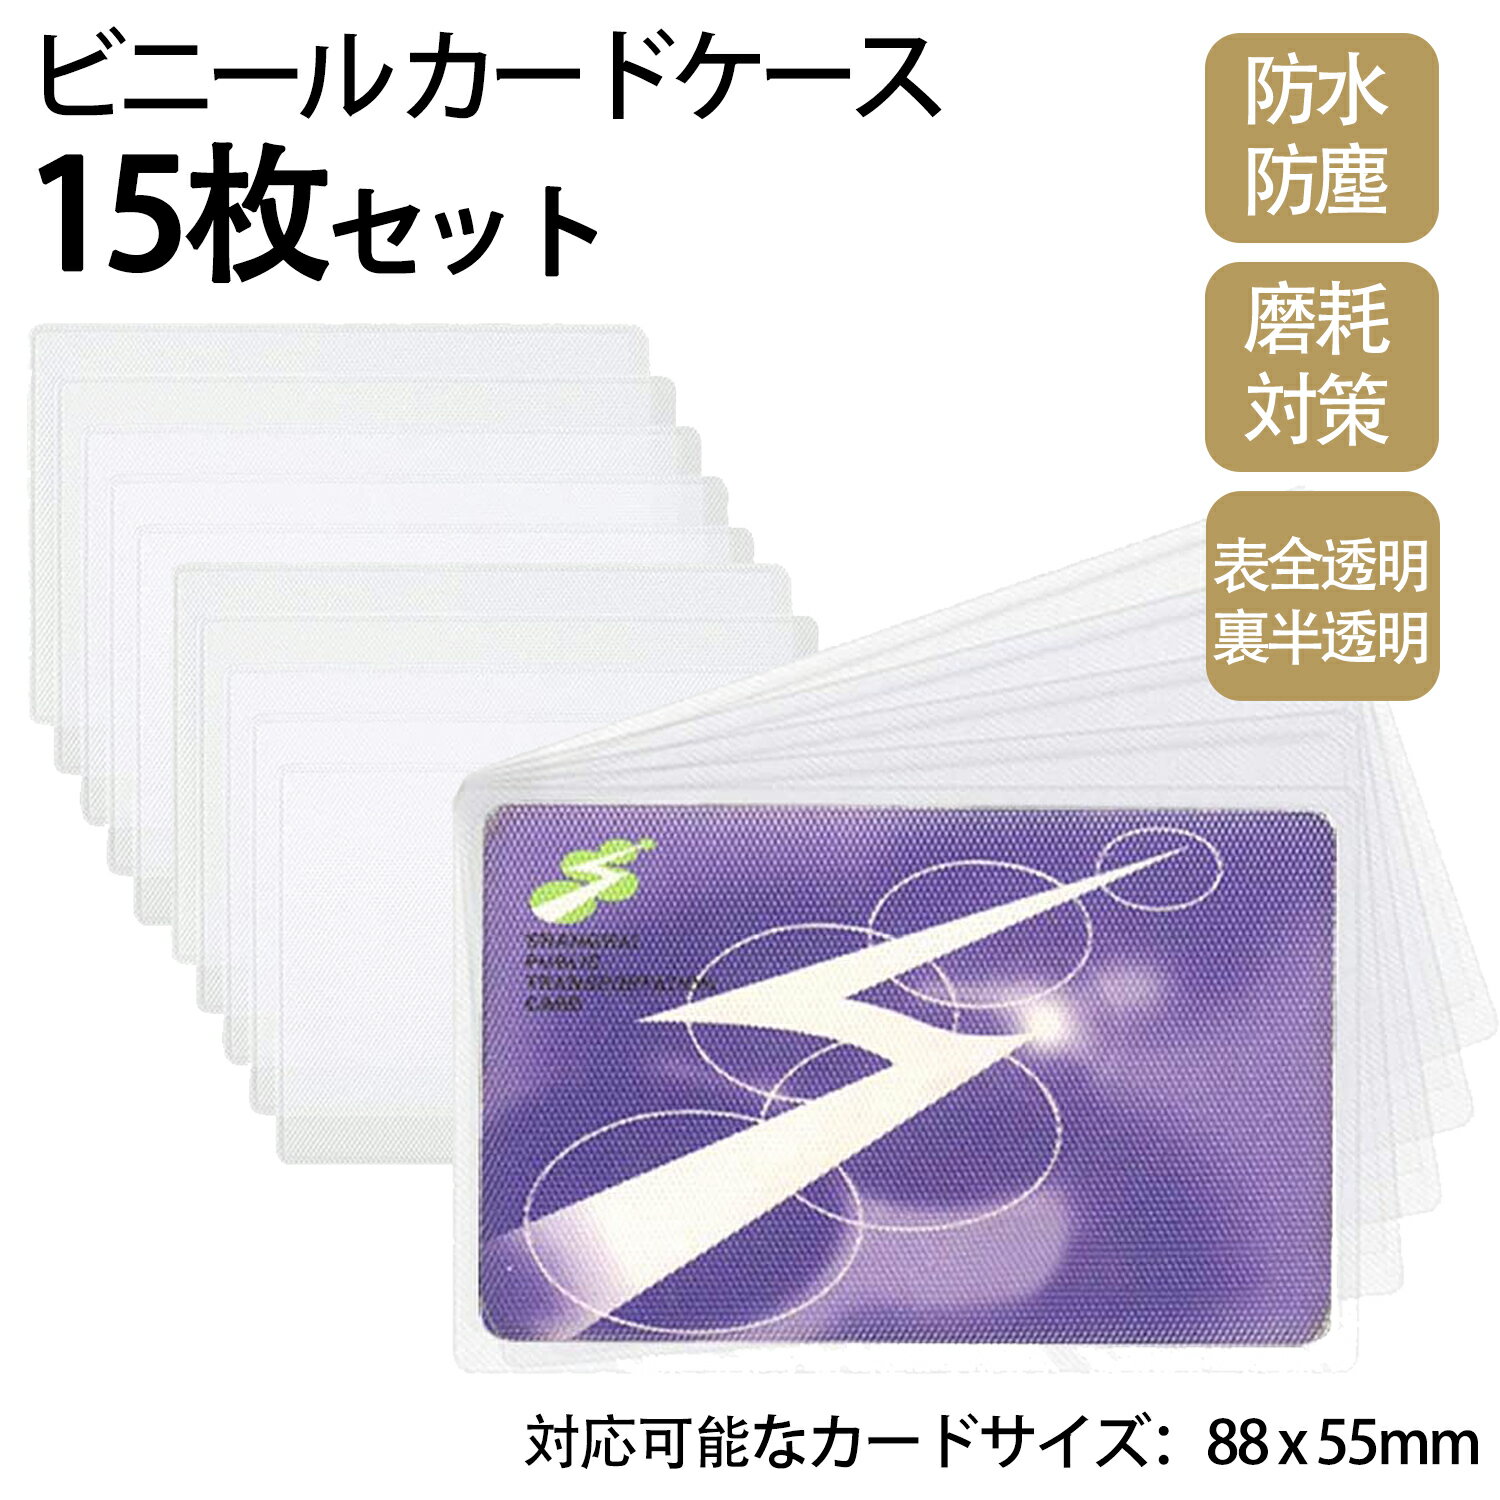 (15枚) ビニール カードケース 透明 薄型 防水 IDカ